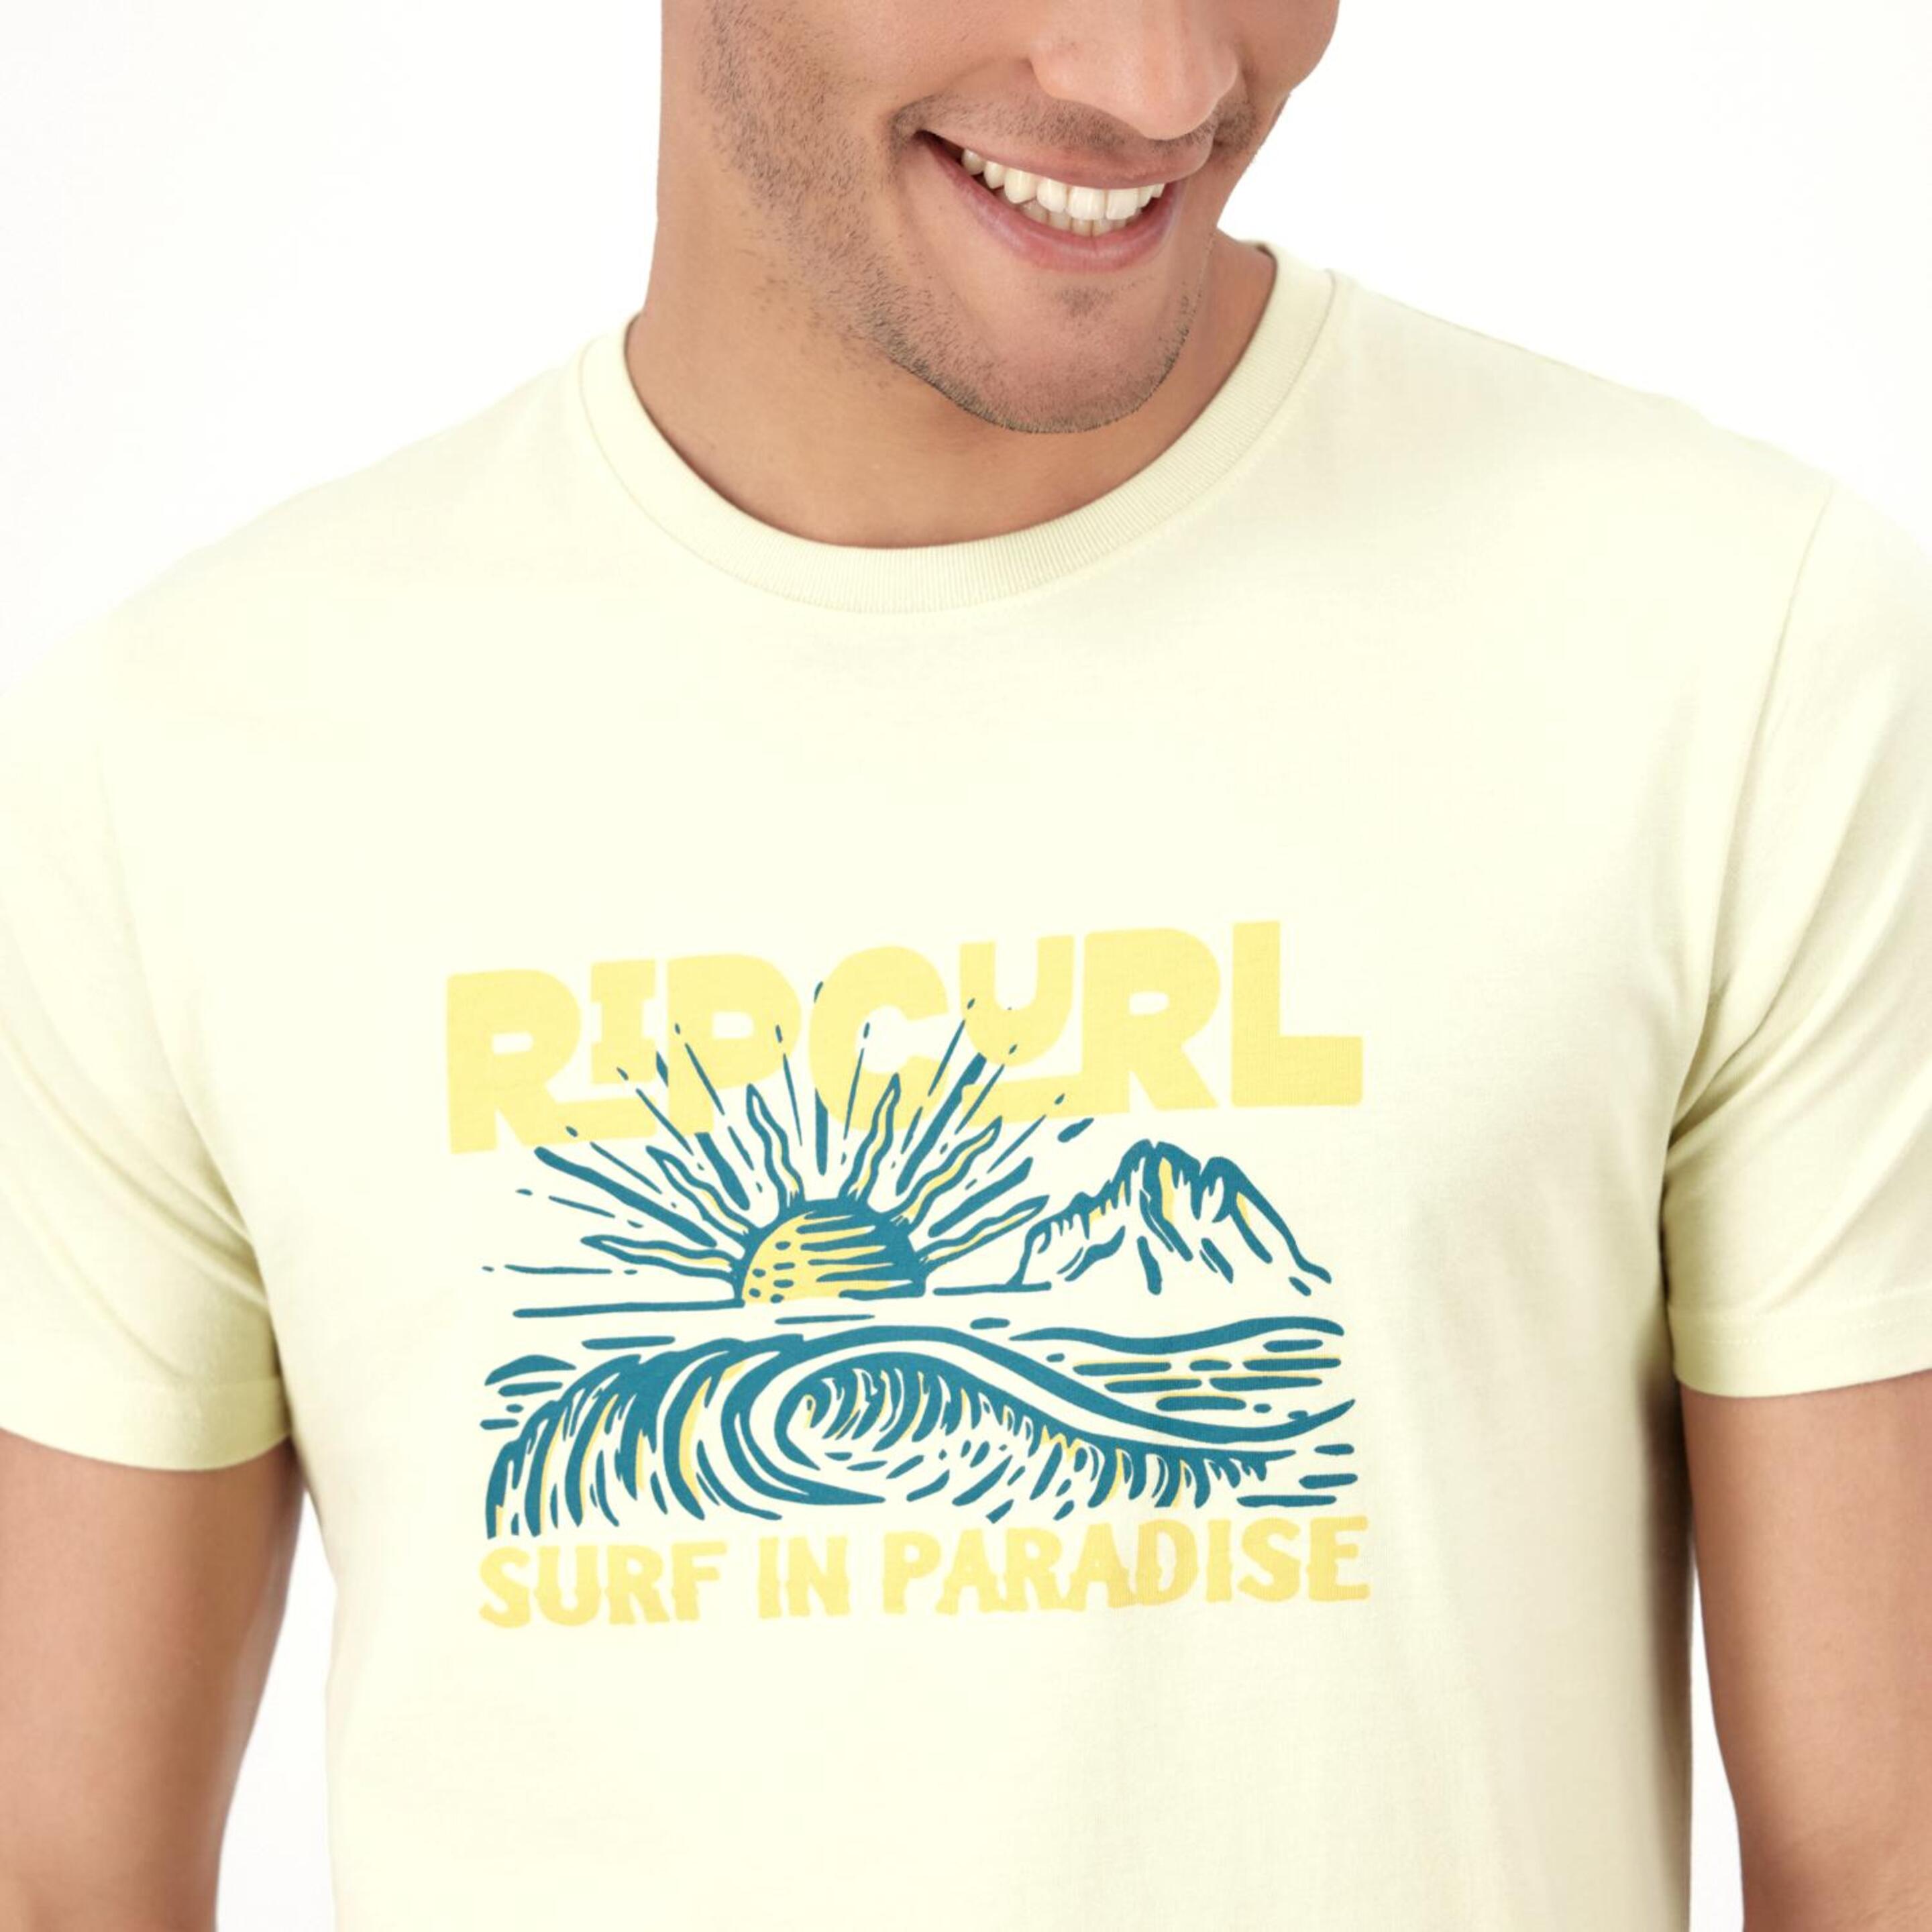 Camiseta Rip Curl - Amarillo - Camiseta Hombre